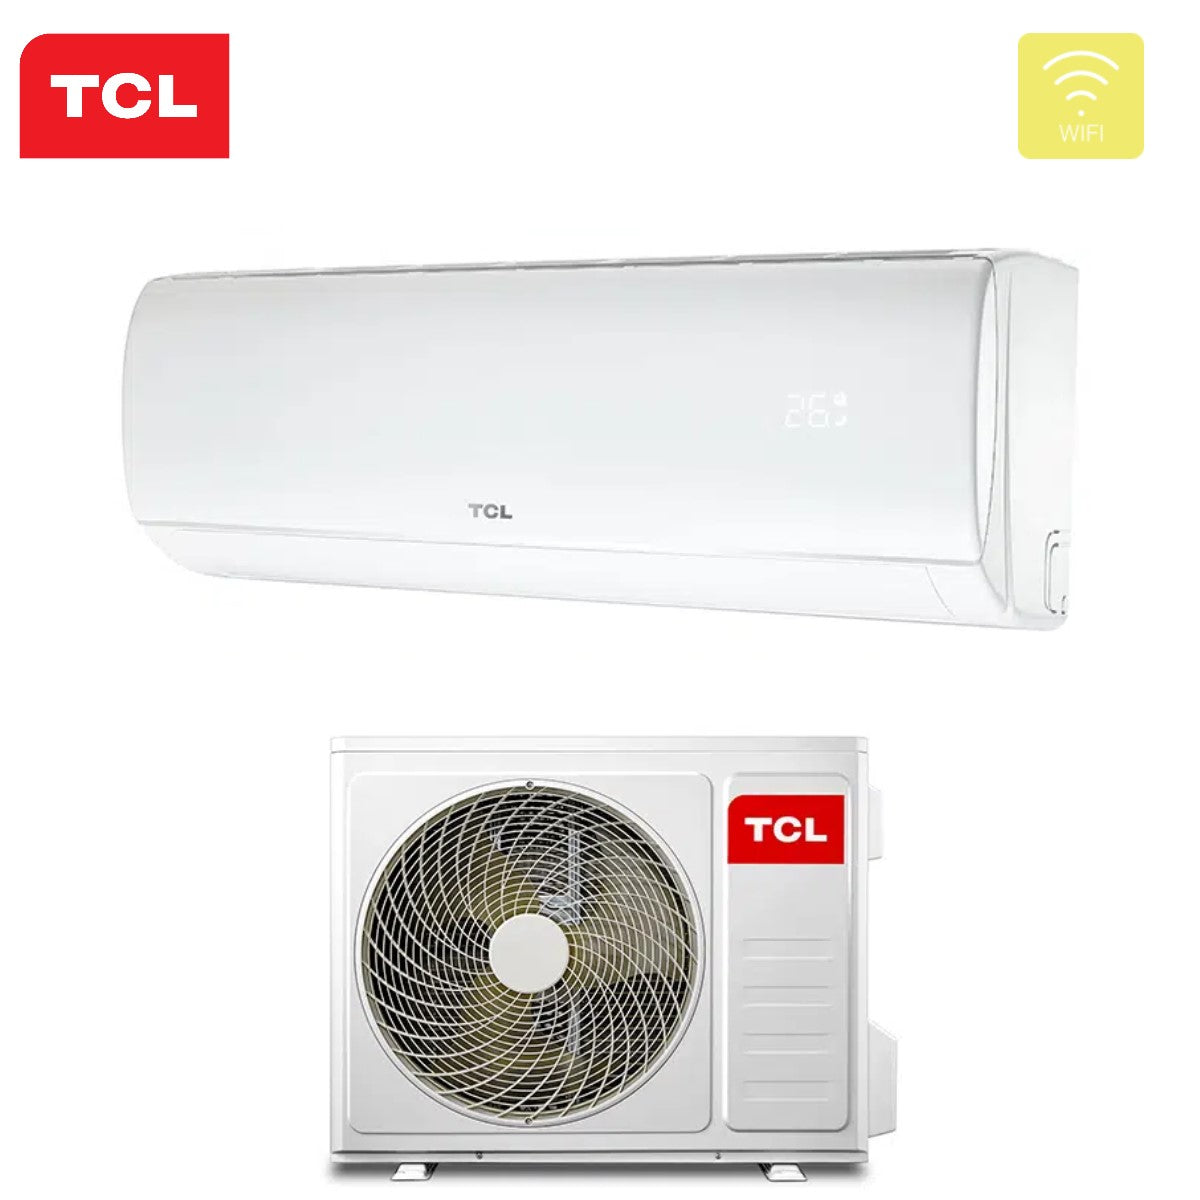 immagine-3-tcl-climatizzatore-condizionatore-tcl-inverter-serie-elite-f1-9000-btu-s09f1s0t-r-32-wi-fi-integrato-classe-aa